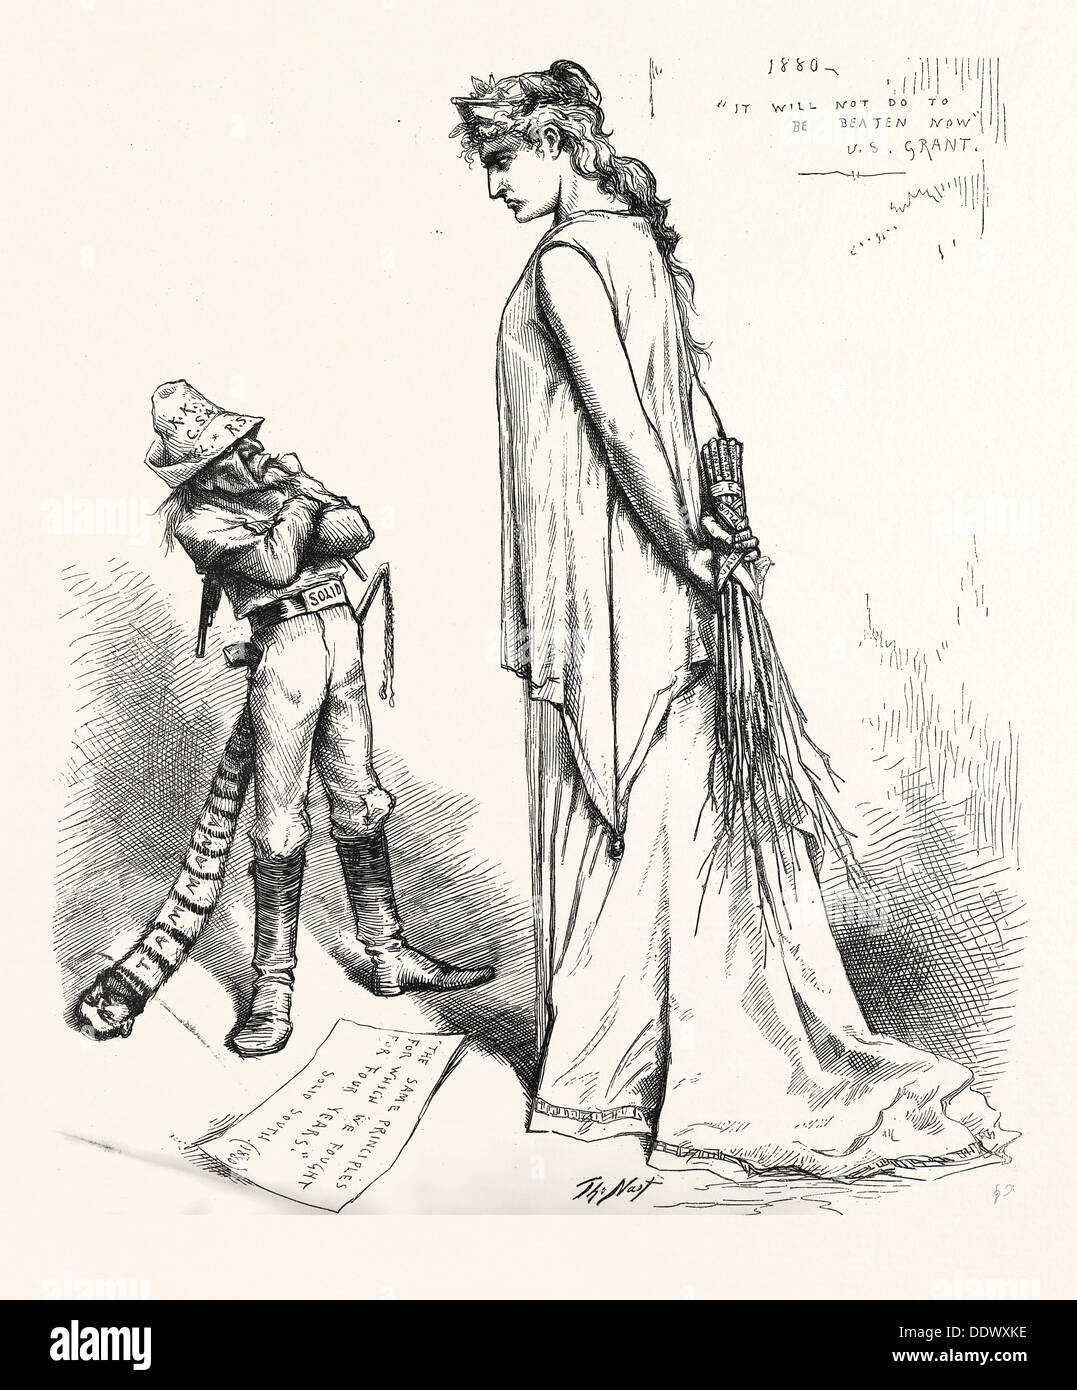 De SOLIDES ET DE DÉFI JAMAIS, gravure 1880, us, USA, femme, homme, soldat Banque D'Images